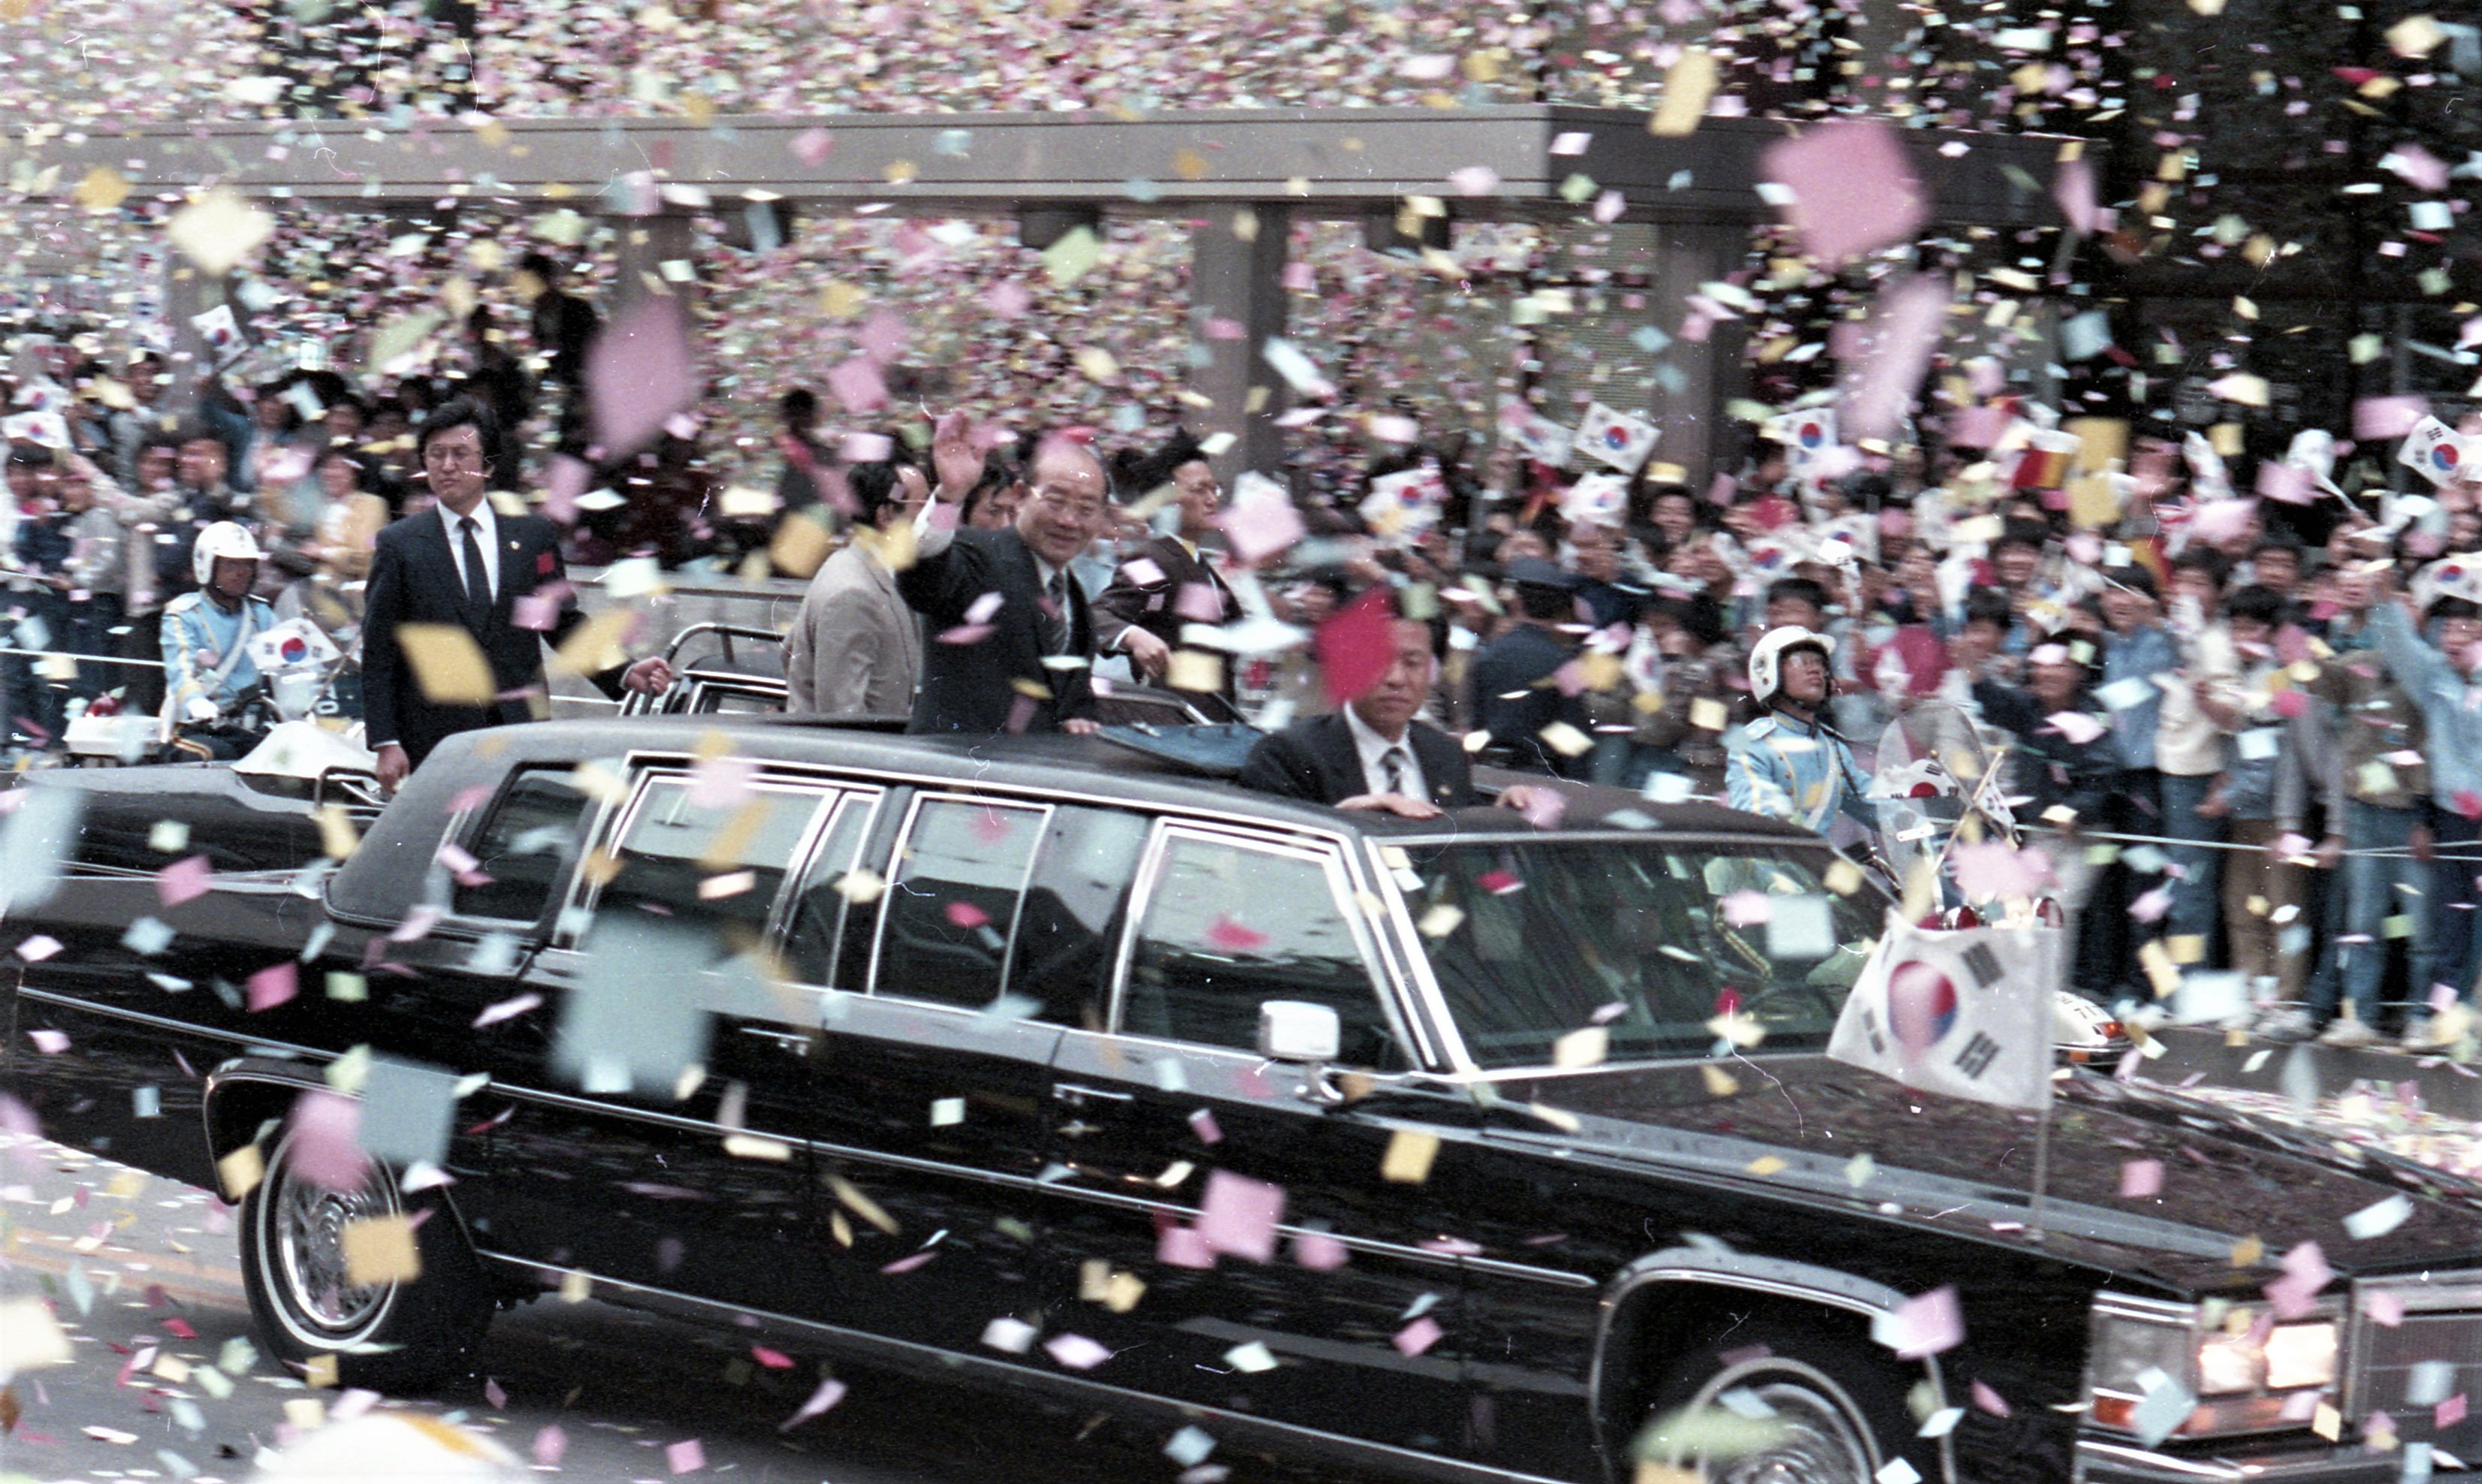 1986년 4월 21일 유럽순방을 마치고 귀국한 전두환 전 대통령이 시민들의 환영을 받으며 차량퍼레이드를 하고 있다. 1986. 4. 21 서울신문 사진창고